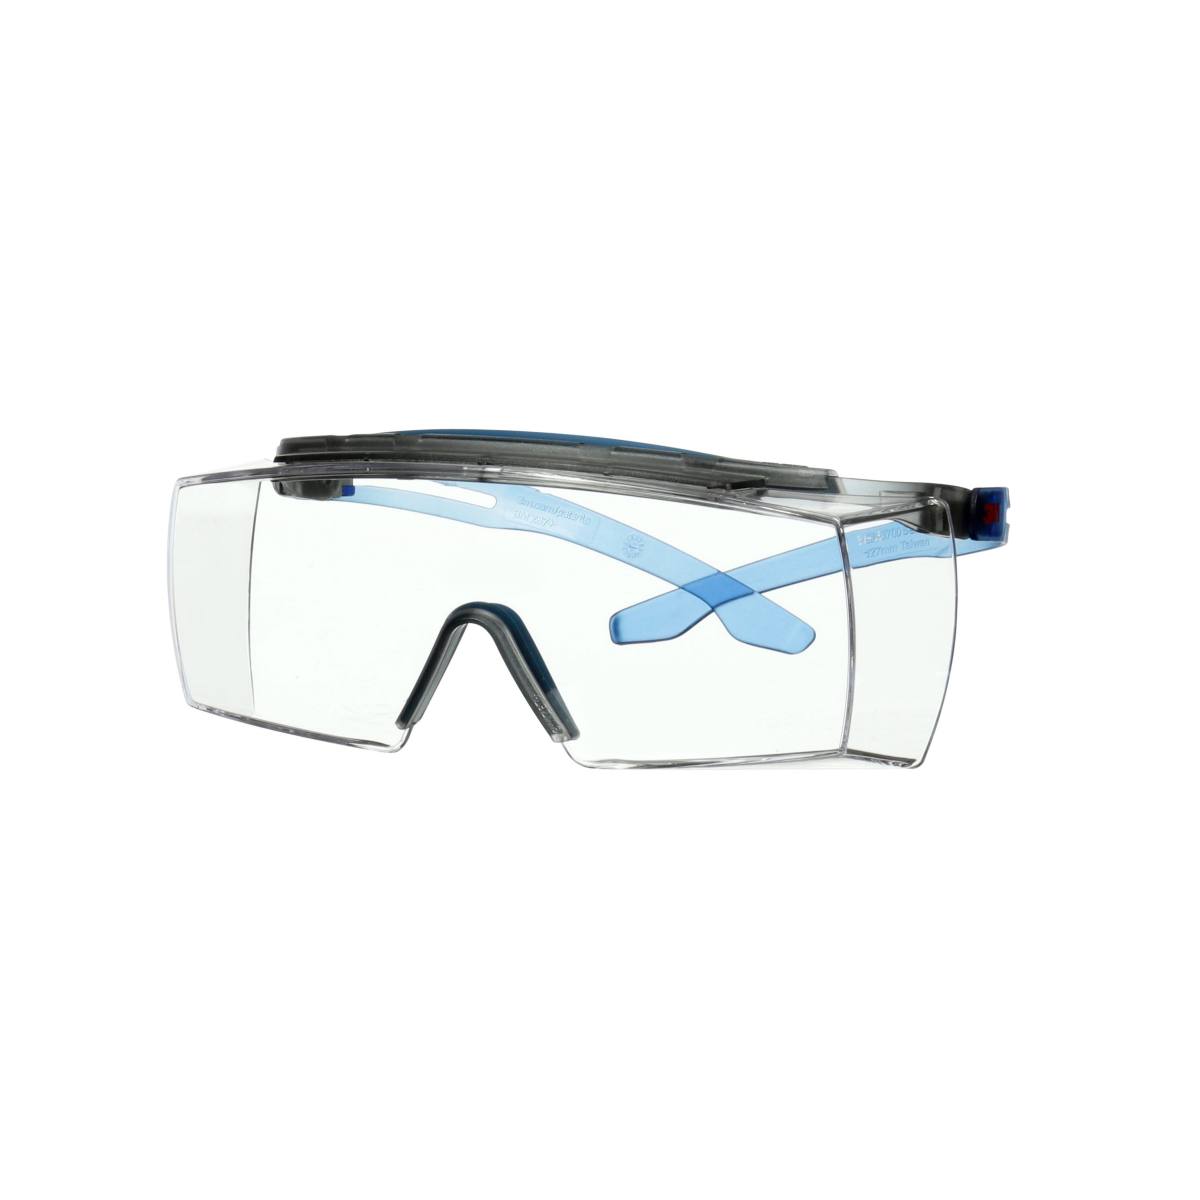 3M SecureFit 3700 Überbrille, blaue Bügel, integrierter Augenbrauenschutz, Scotchgard Anti-Beschlag Beschichtung (K&N), transparente Scheibe, winkelverstellbar, SF3701XSGAF-BLU-EU